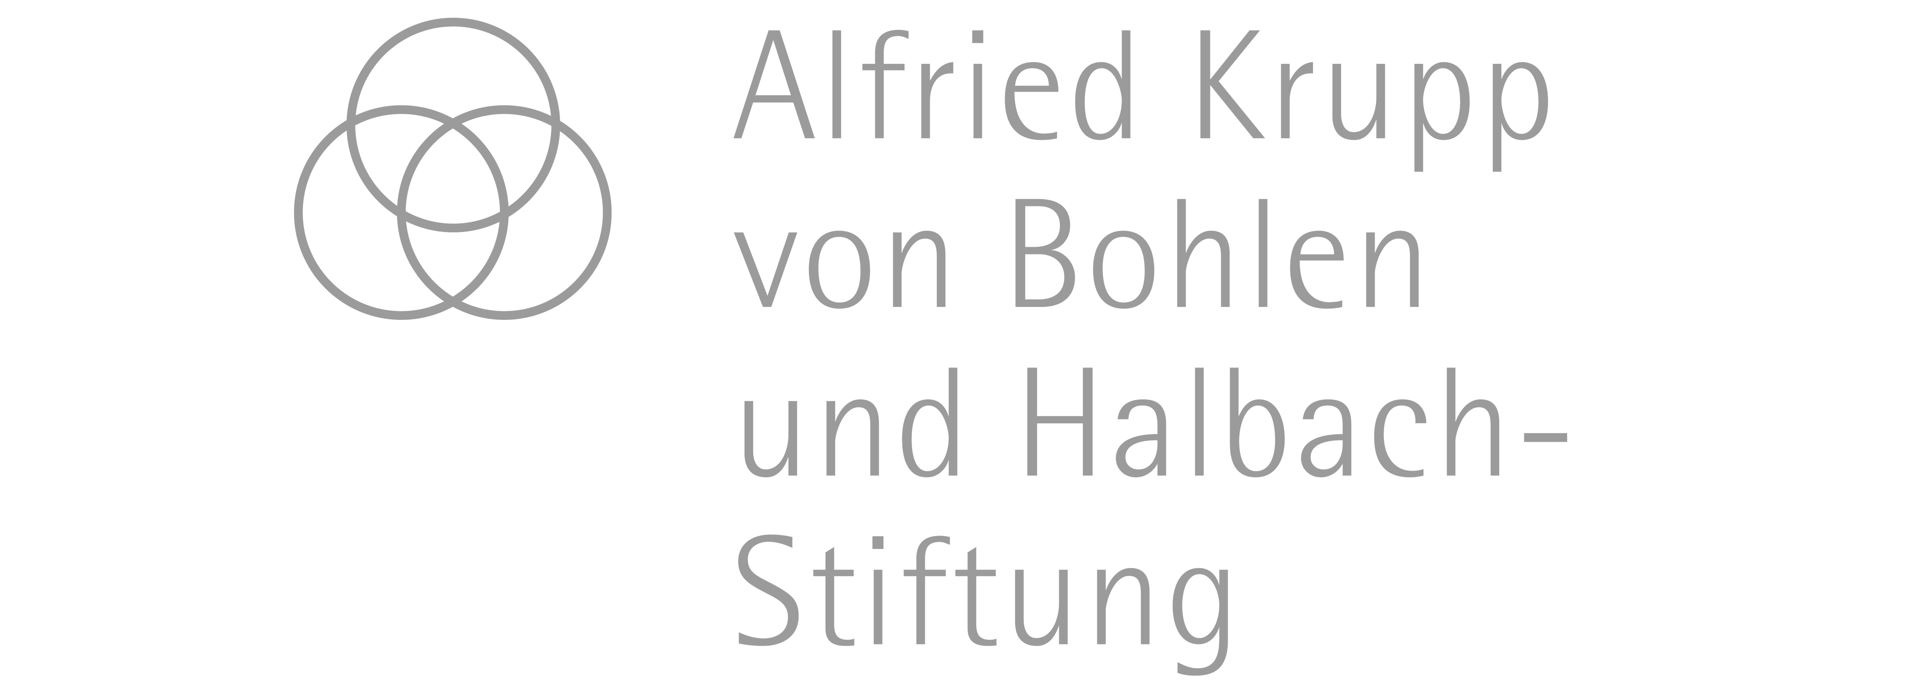 Logo Krupp-Stiftung